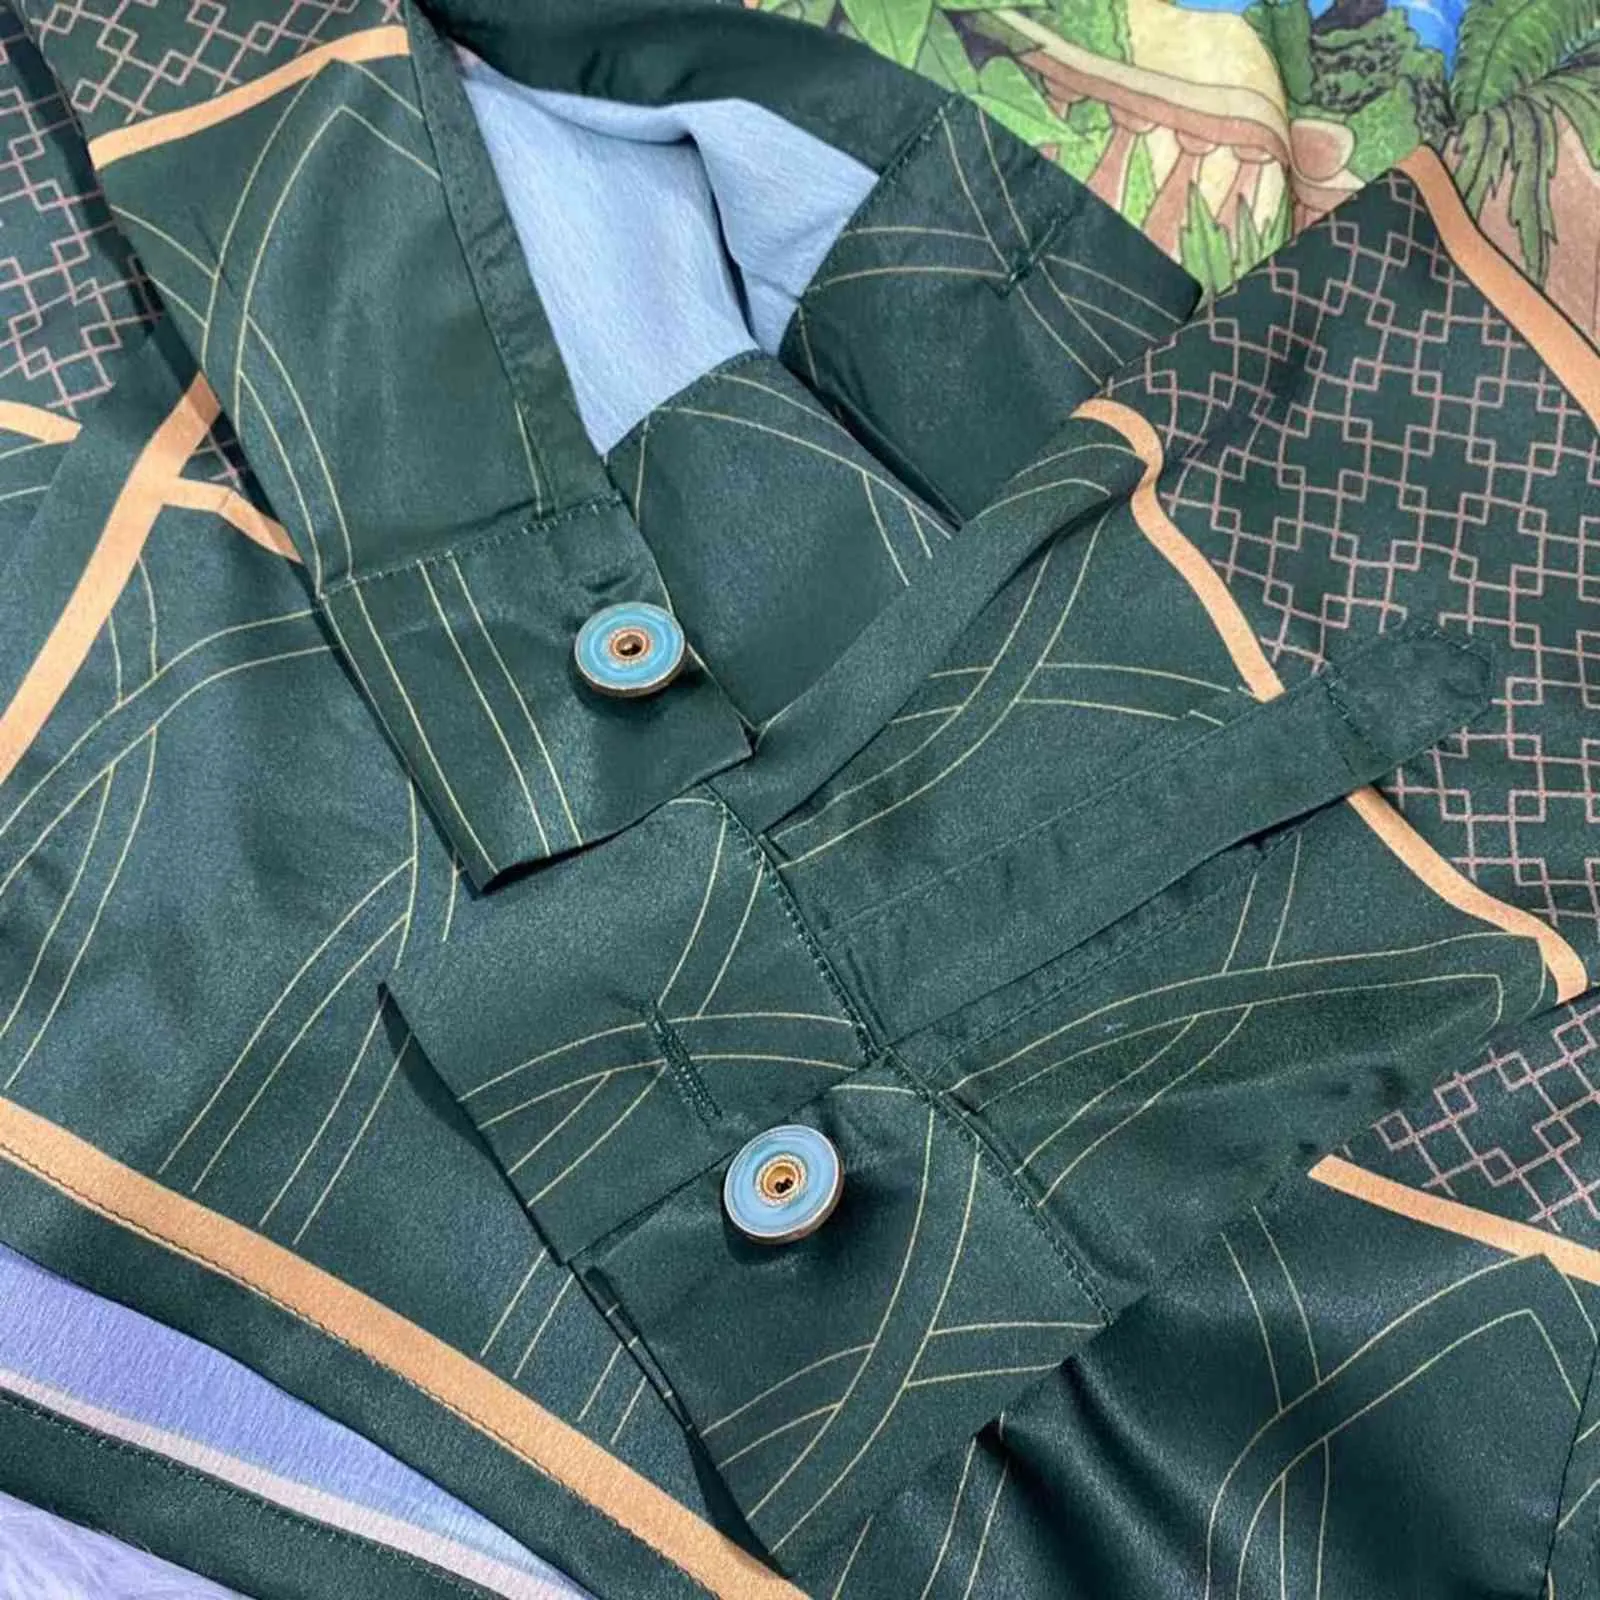 Camisa de manga larga de seda con estampado de carta de alquimia estilo Casablanca, tótem de constelación de sol y luna, unisex, DQRH264t